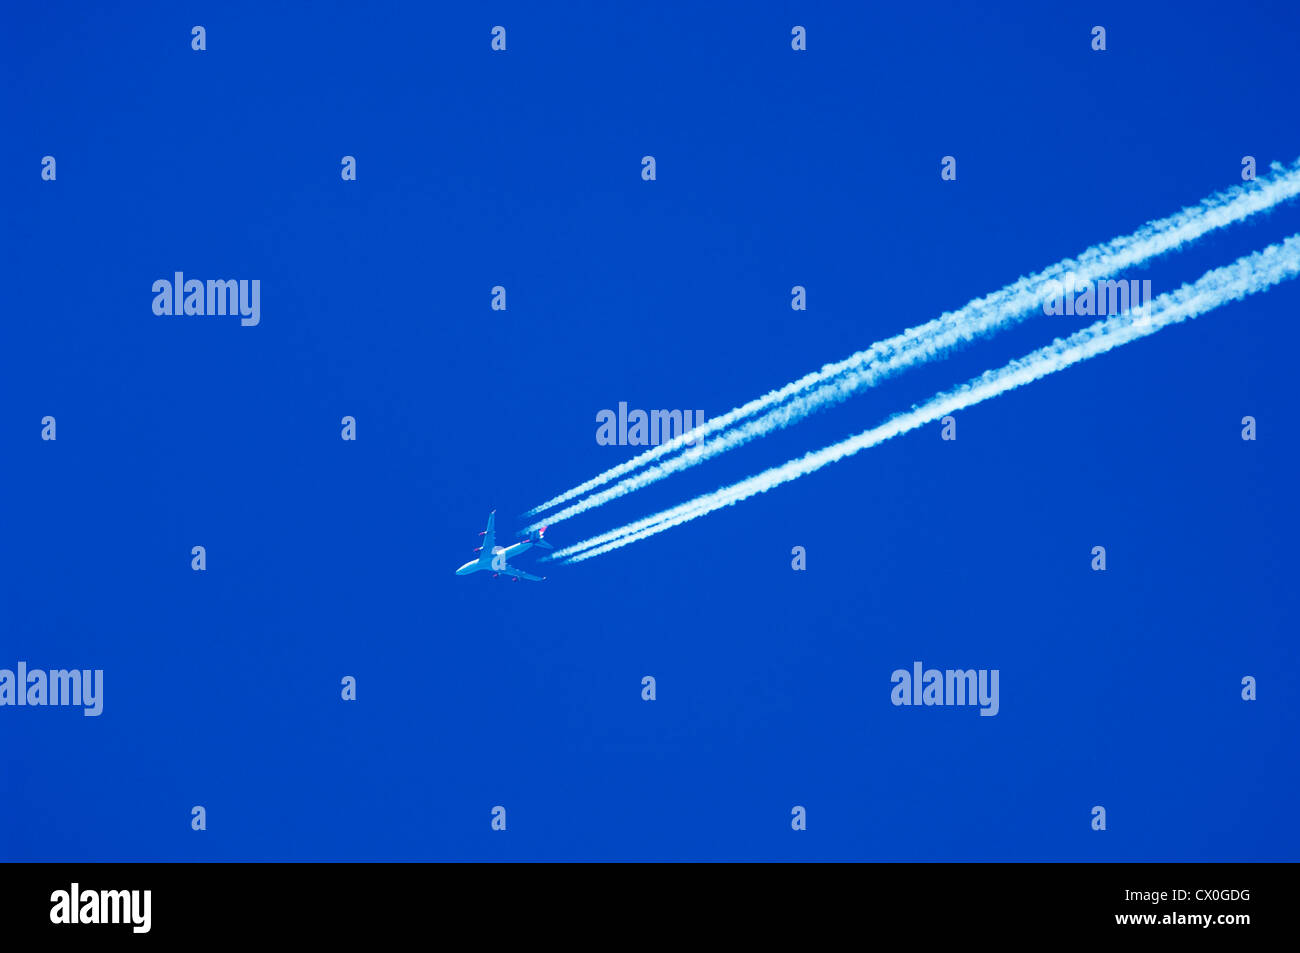 Un jet de passagers volant à haute altitude en laissant des traînées de vapeur contre un ciel bleu clair. Banque D'Images